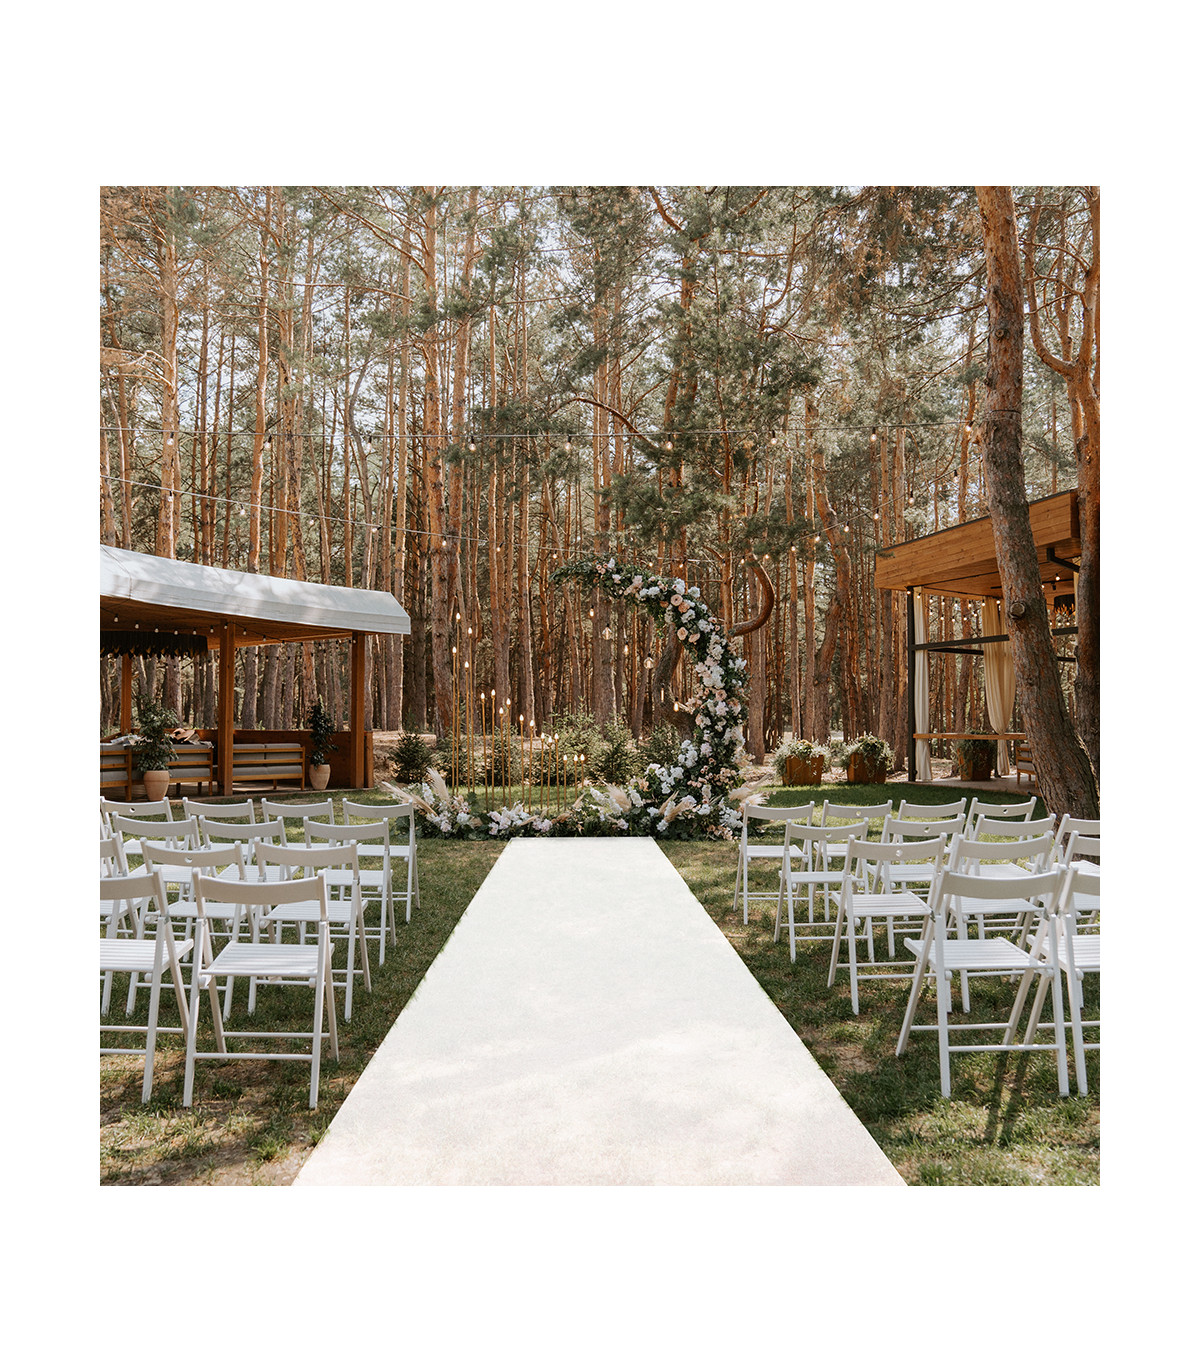 OLIVO.Shop Tappeto passatoia Bianco Nuziale Natalizio per Matrimonio Cerimonia Evento Negozi 12 Formati 45 Metri 30+15 